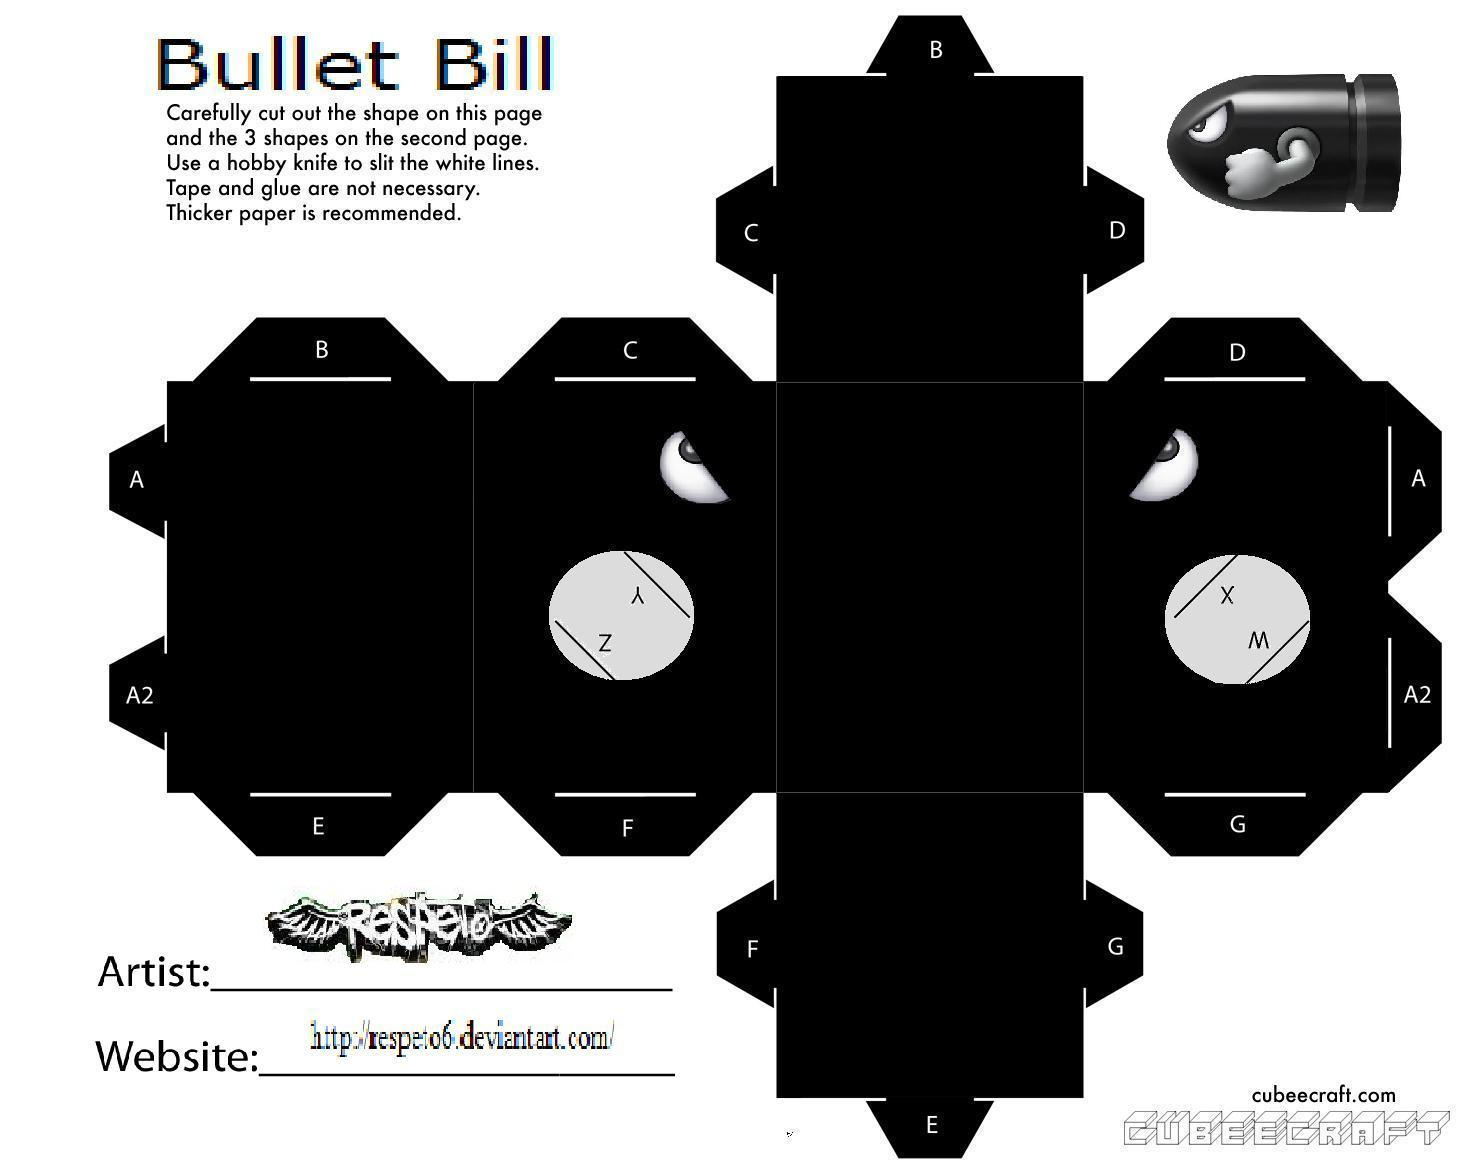 bill the bullet